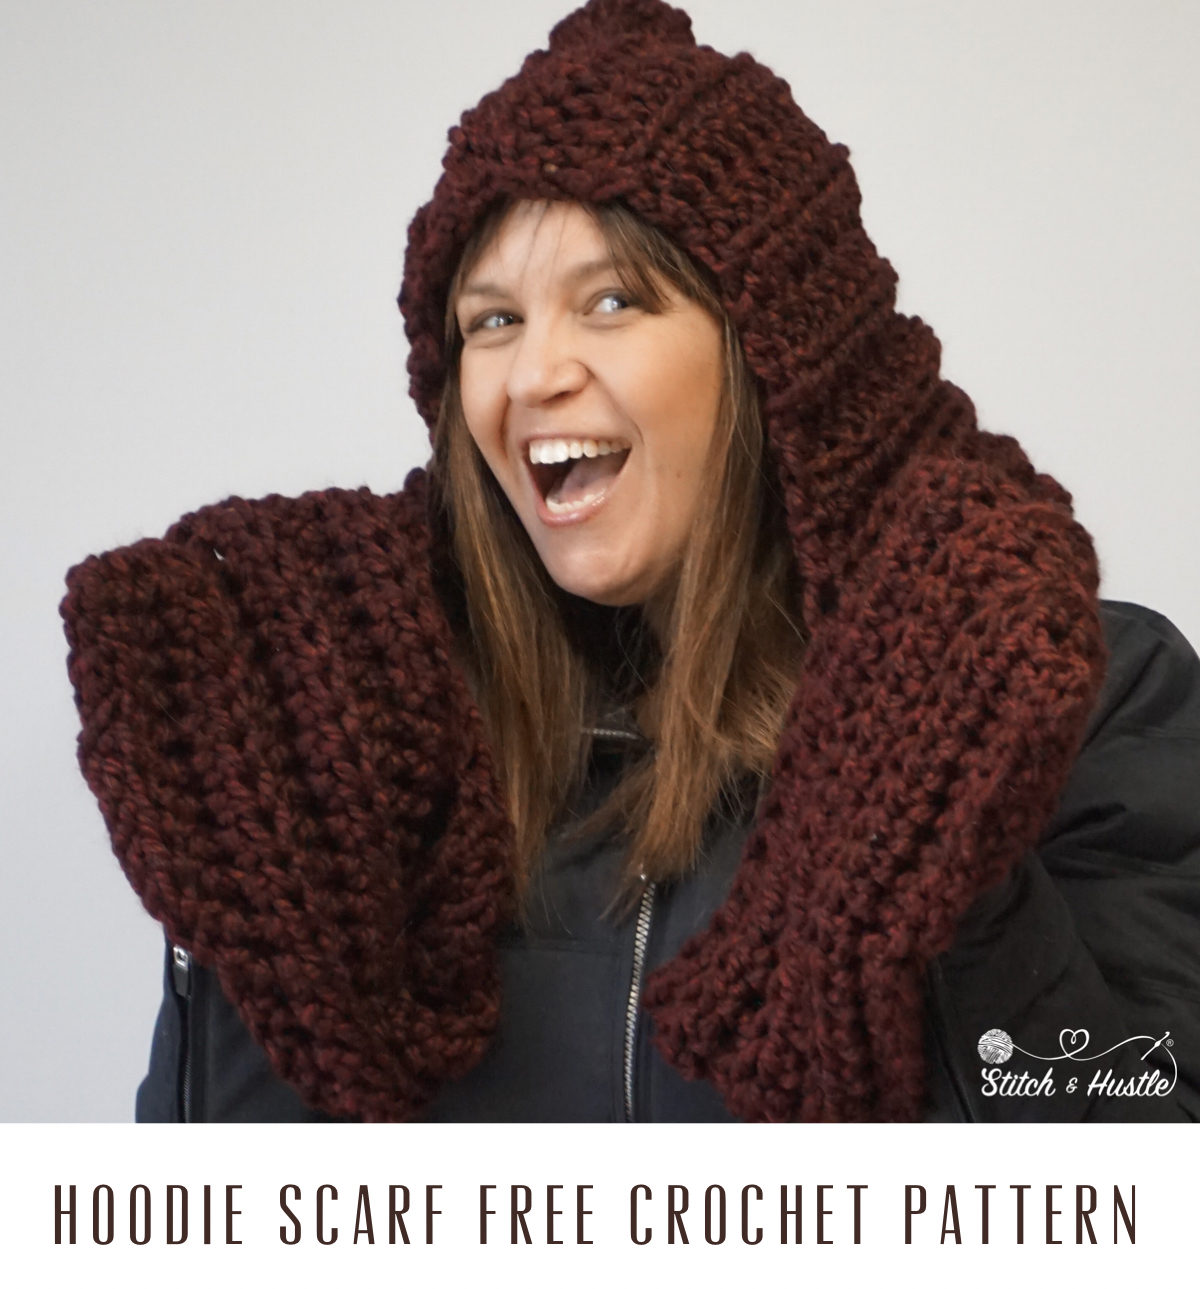 Crochet Schoodie pattern - Scarf+Hoodie=schoodie!, Crochet pattern by  SweetPotatoPatterns Crochet pattern by Ashton11, Knitting Patterns